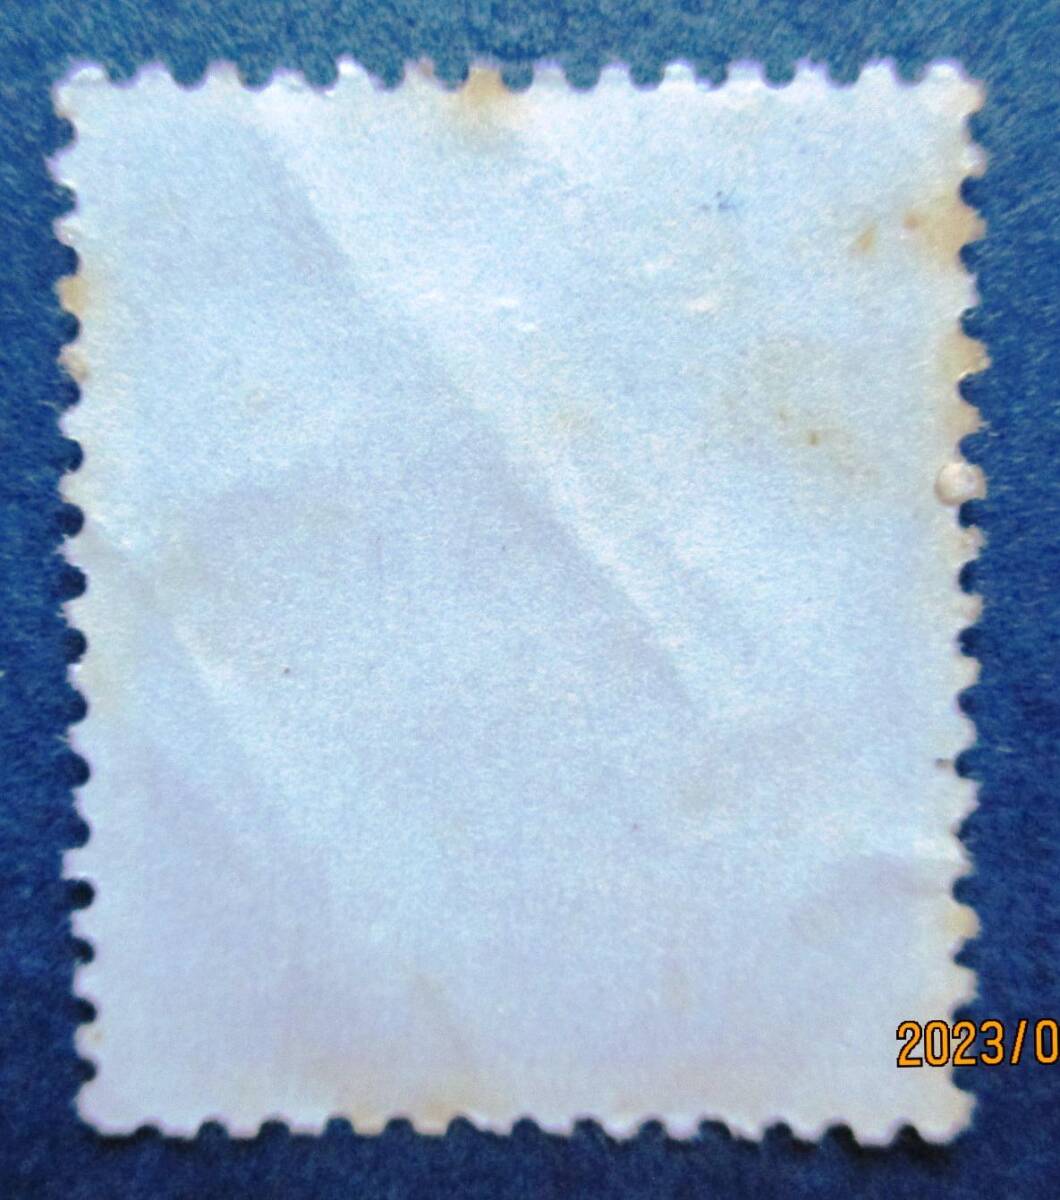 沖縄切手・琉球切手 第2次動植物シリーズ 8￠切手 AA188 裏にスジがあります。画像参照してください。の画像4